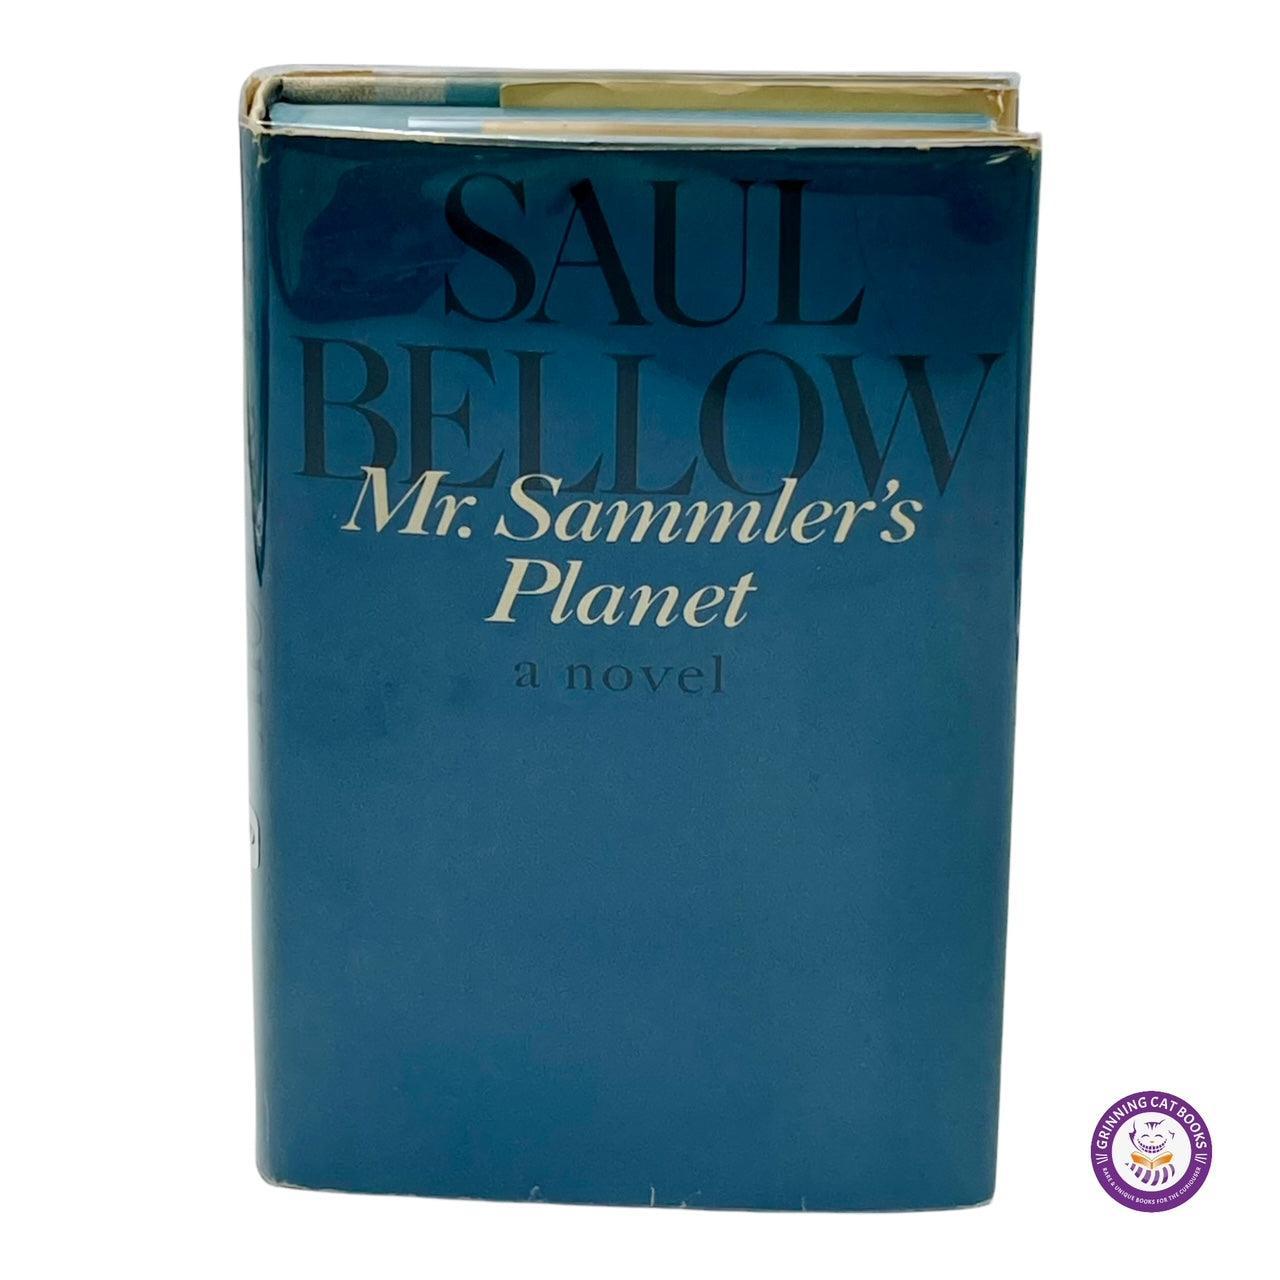 Mr. Sammler's Planet (sign by Saul Bellow) - Grinning Cat Books - LITERATURE - 